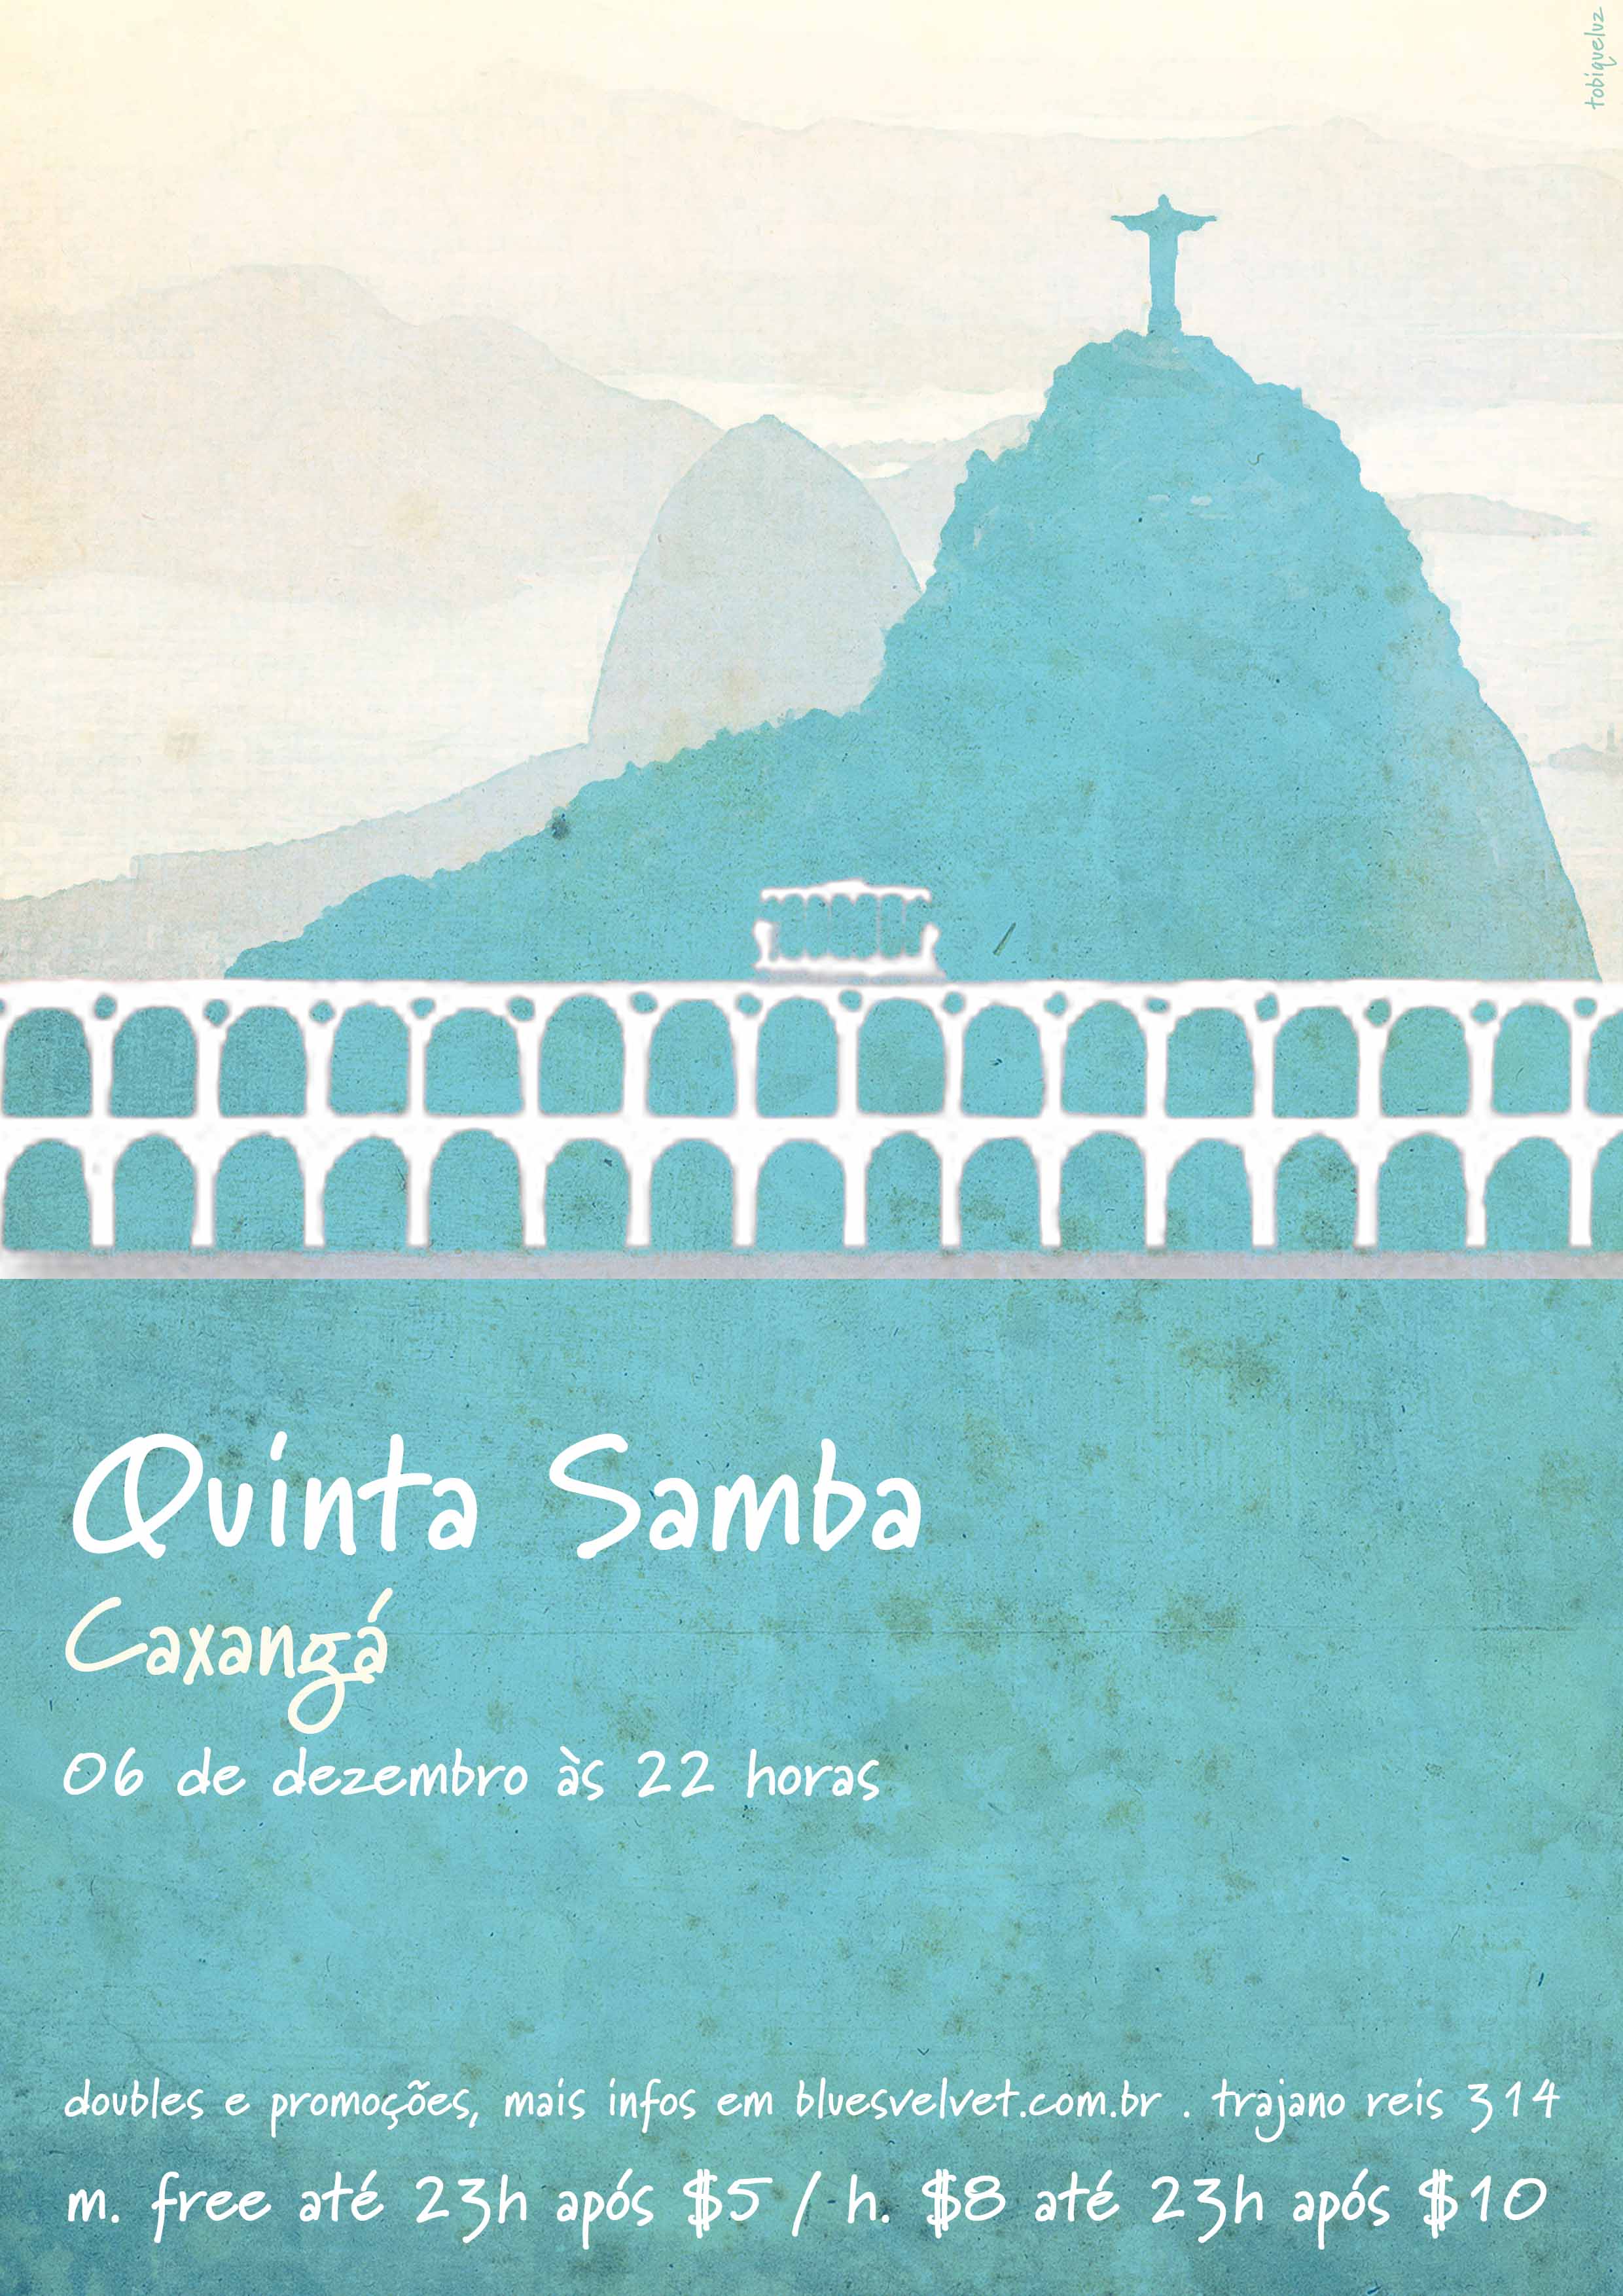 06/12 – Quinta Samba